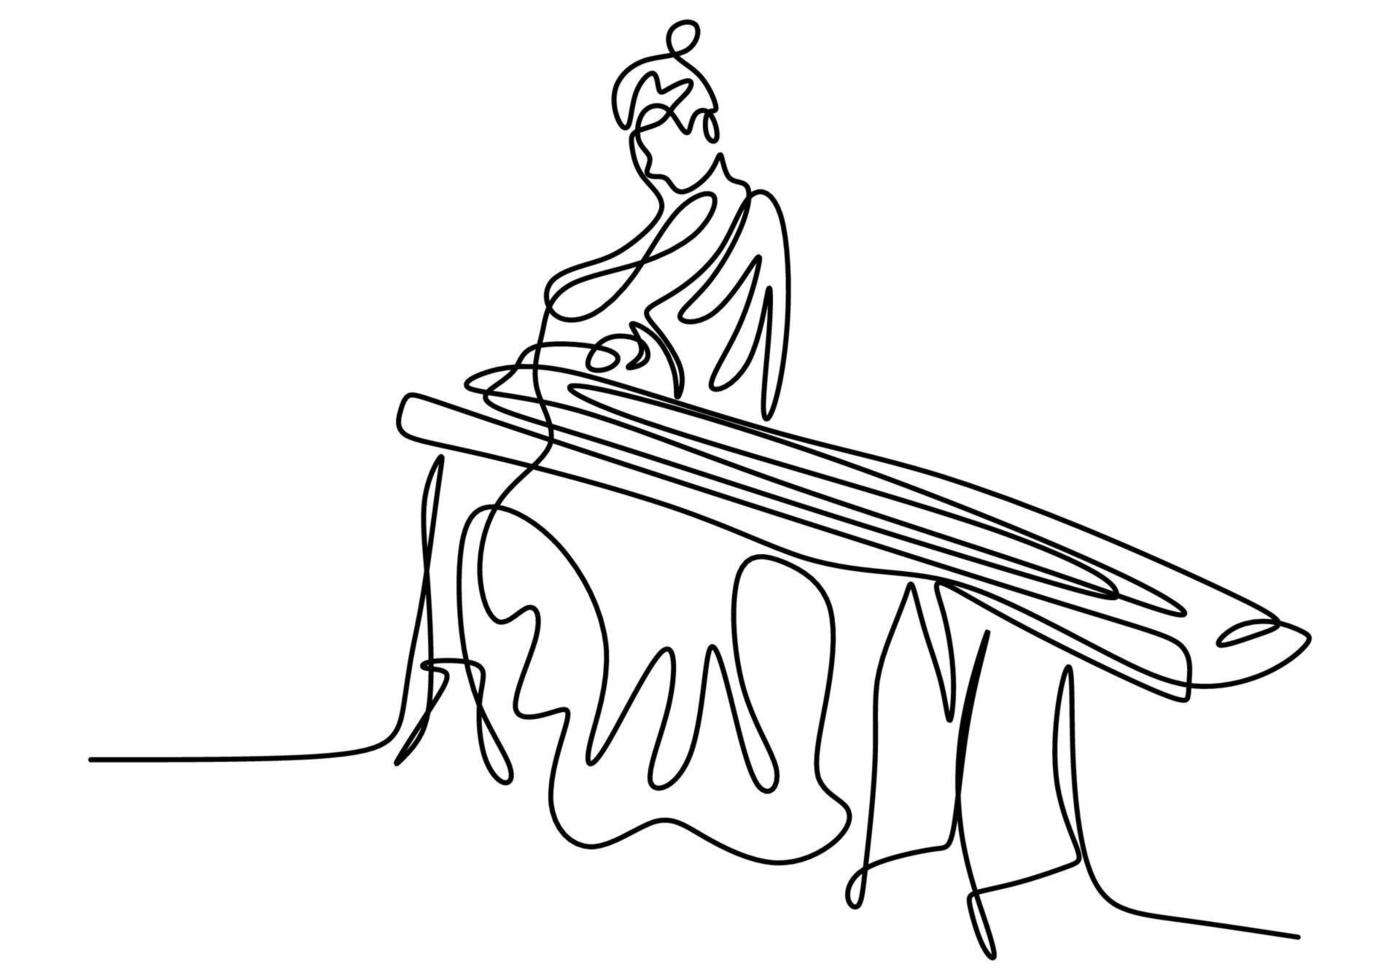 dibujo de línea continua de mujer con koto, música tradicional japonesa. una hermosa niña vestida con un kimono está sentada mientras toca un instrumento musical tradicional. vector